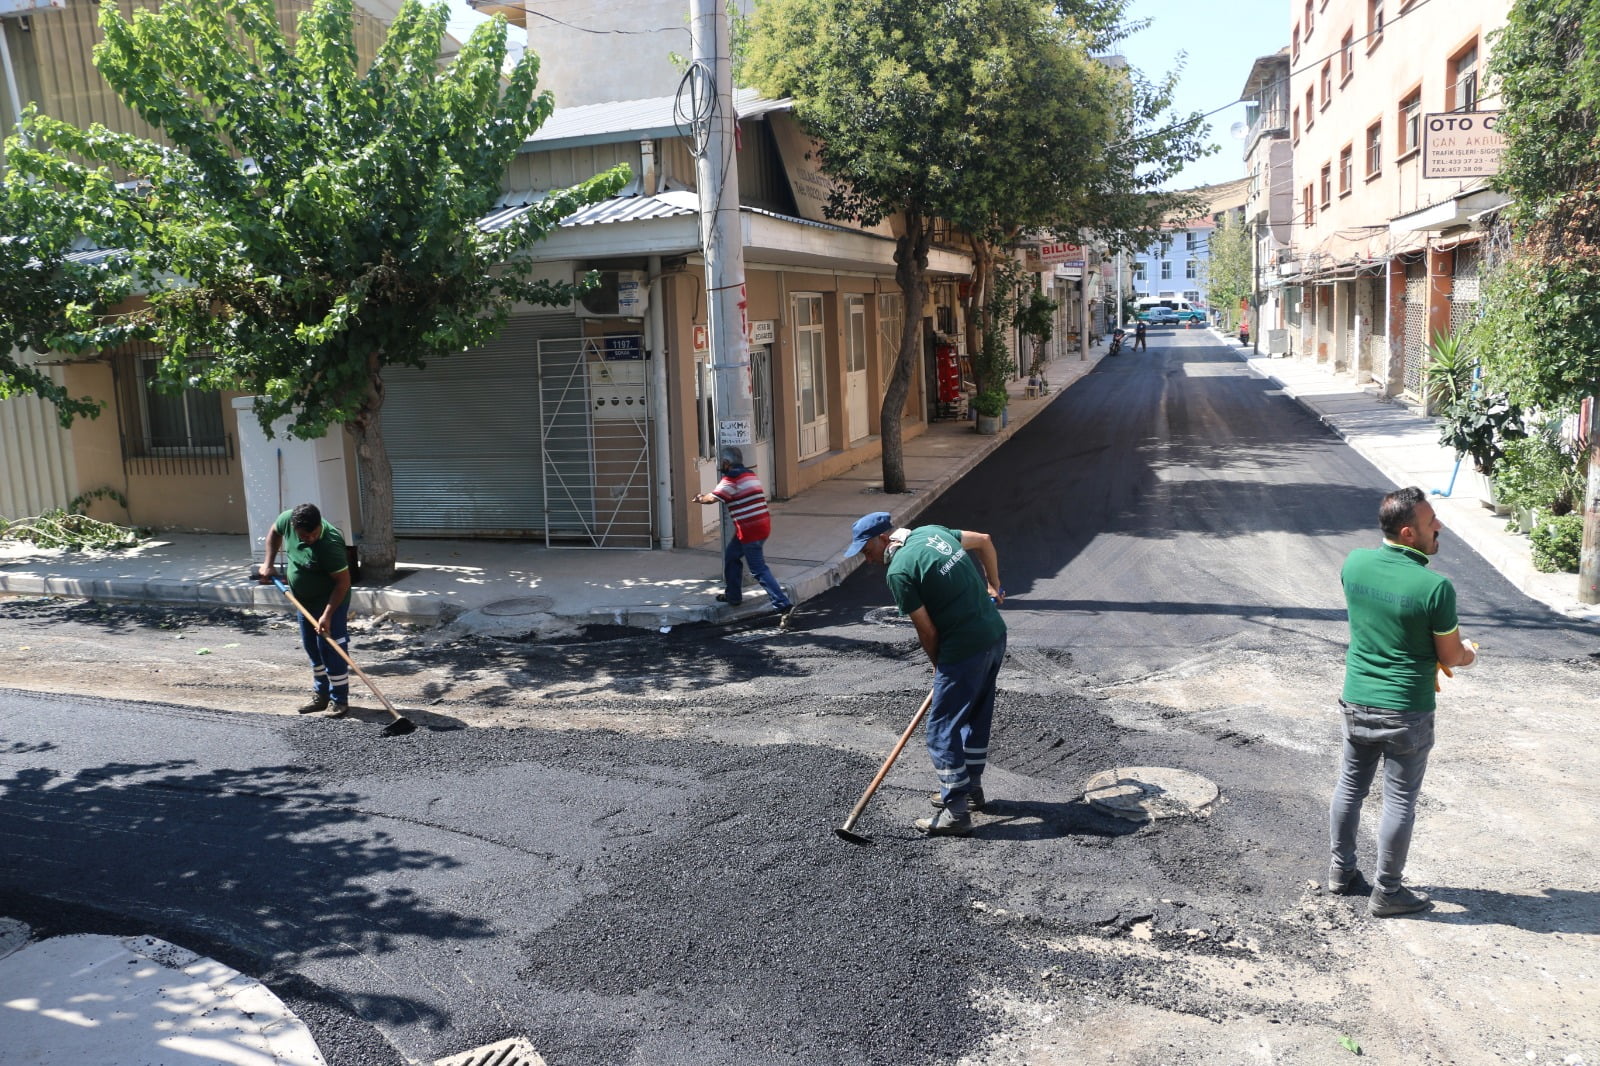 Konak’ın sokaklarına  7 ayda 3 bin 800 ton asfalt